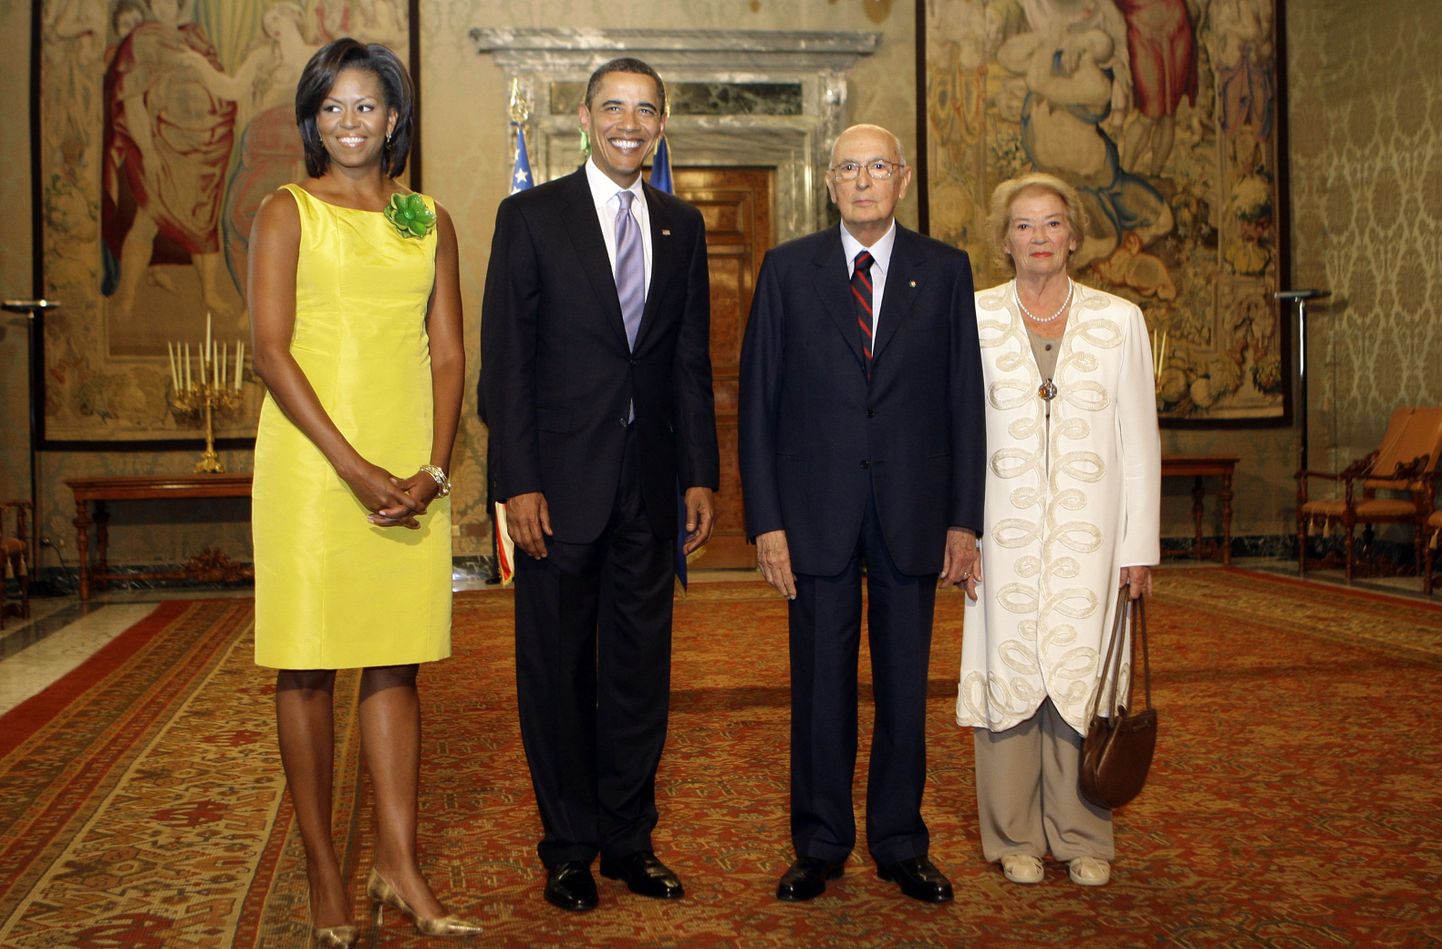 Otse Moskvast G8 kohtumisele jõudnud USA presidendipaar Barack ja Michelle Obama koos Itaalia presidendi Giorgio Napolitano ja viimase abikaasa Clio Napolitanoga.